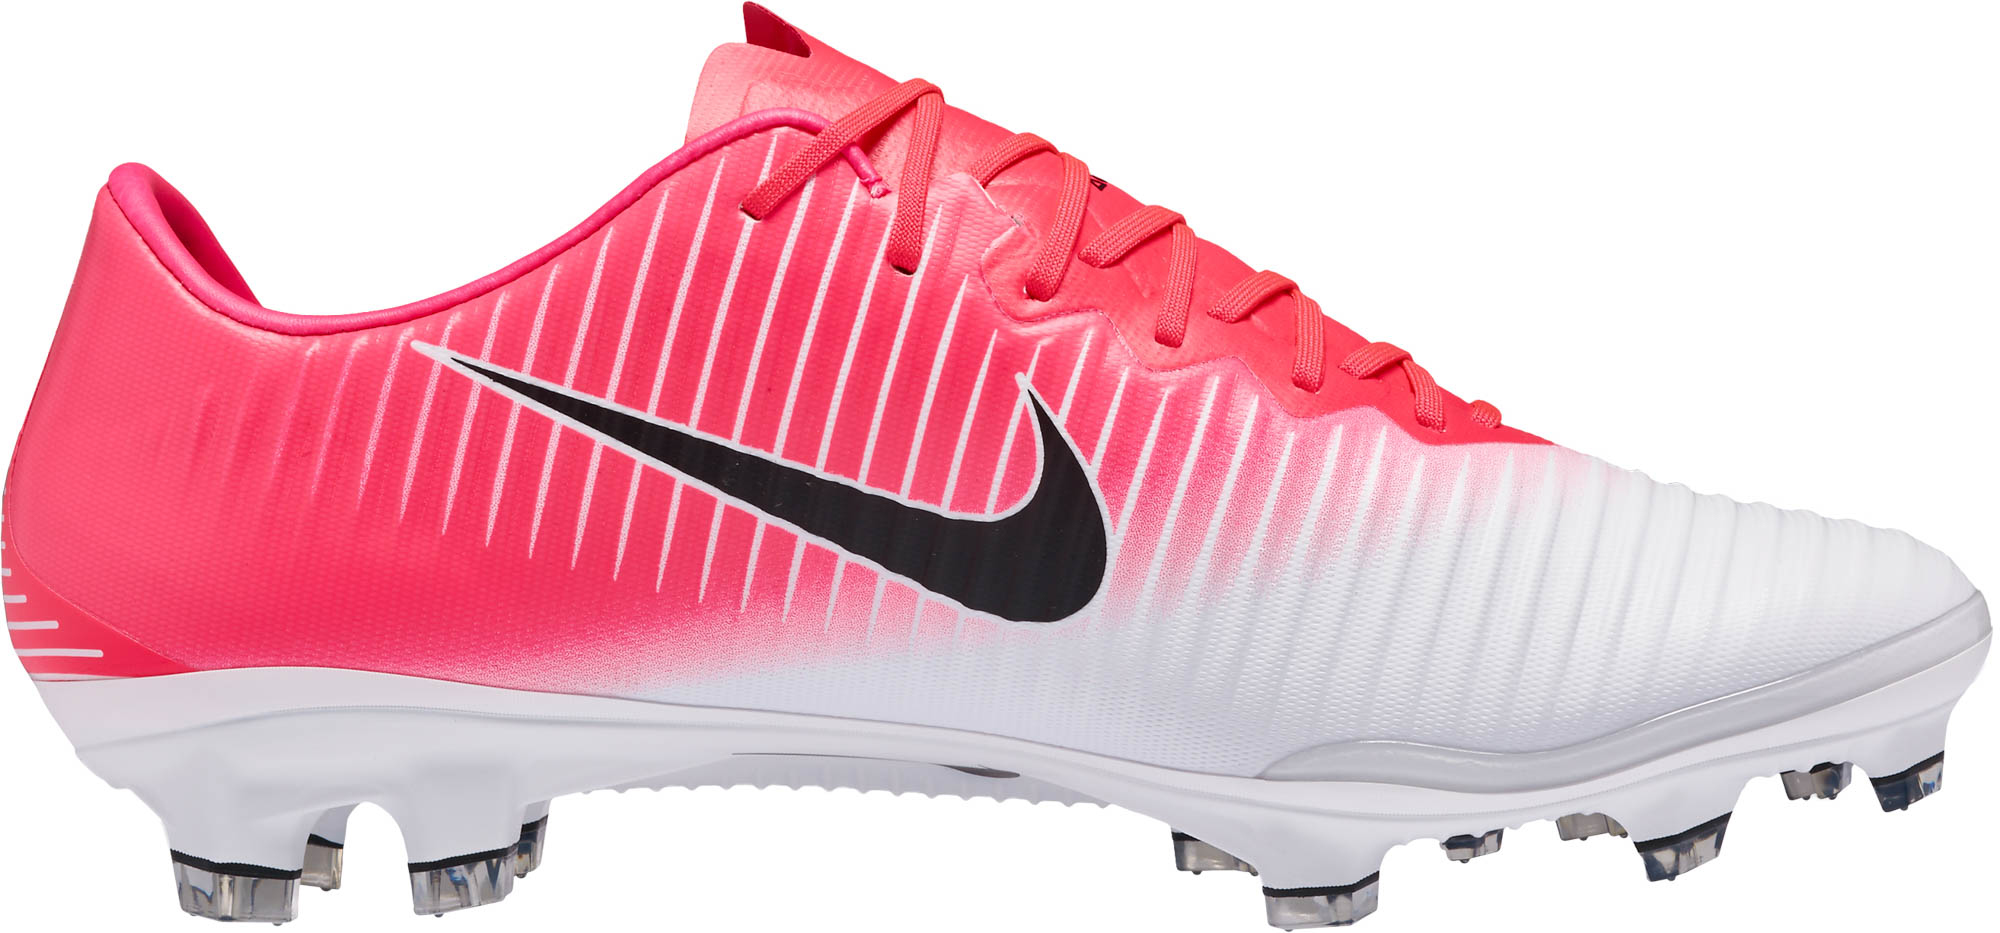 Weggelaten Verouderd Voorzichtig Nike Mercurial Vapor XI - Pink Mercurial Soccer Cleats